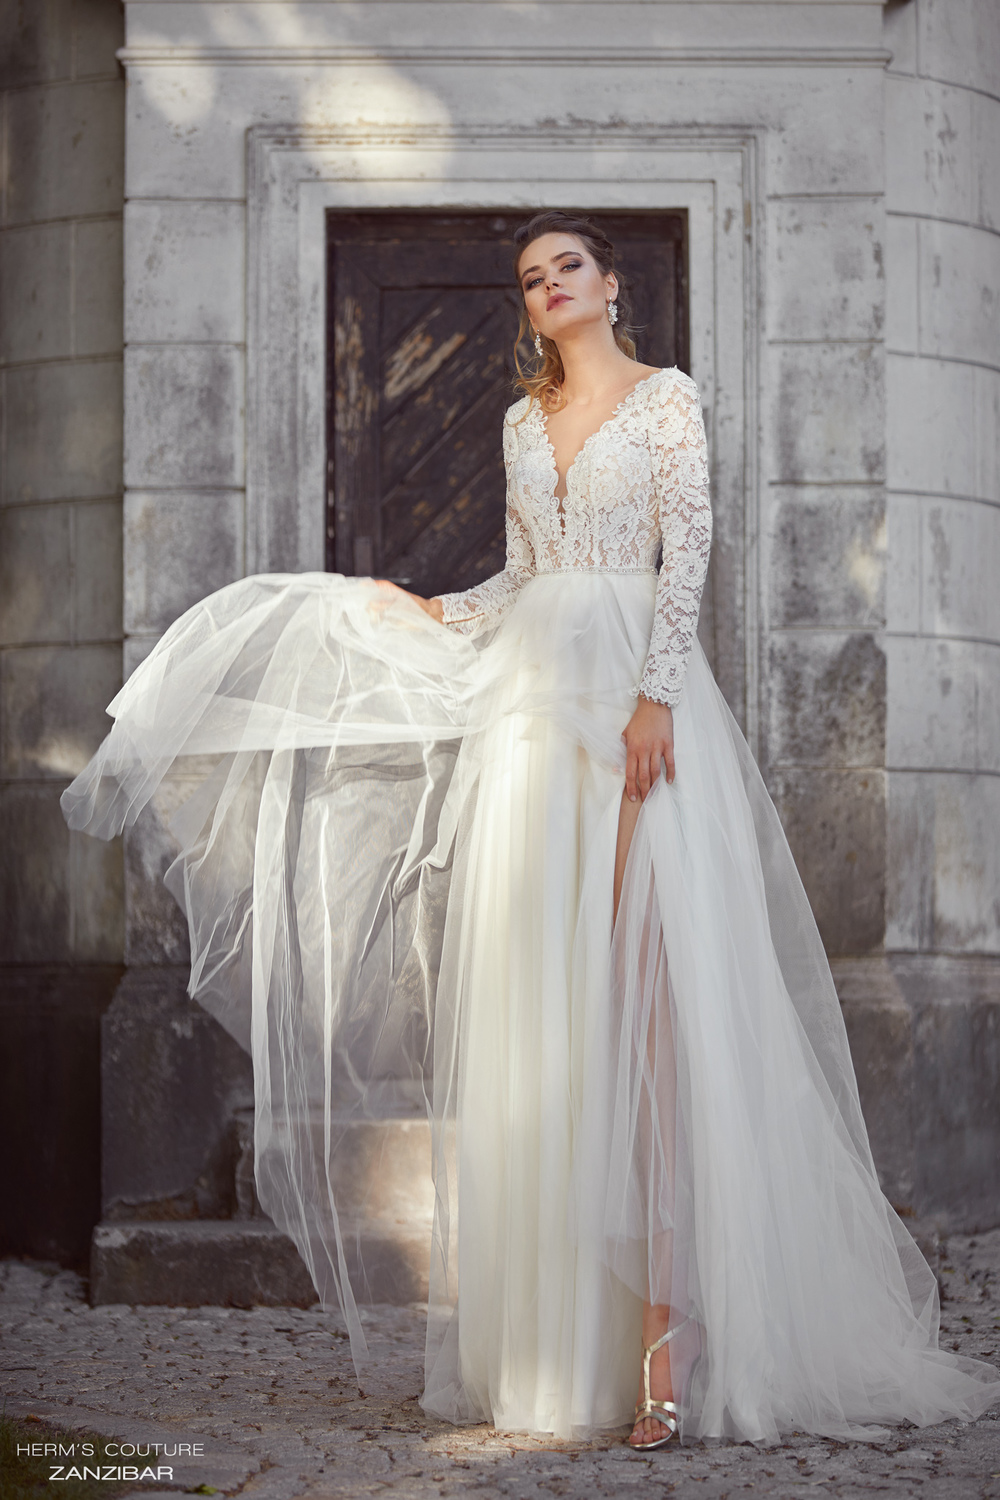 Kathy De Stafford bridal wear - Dublins Leading Wedding Dress Designer ...